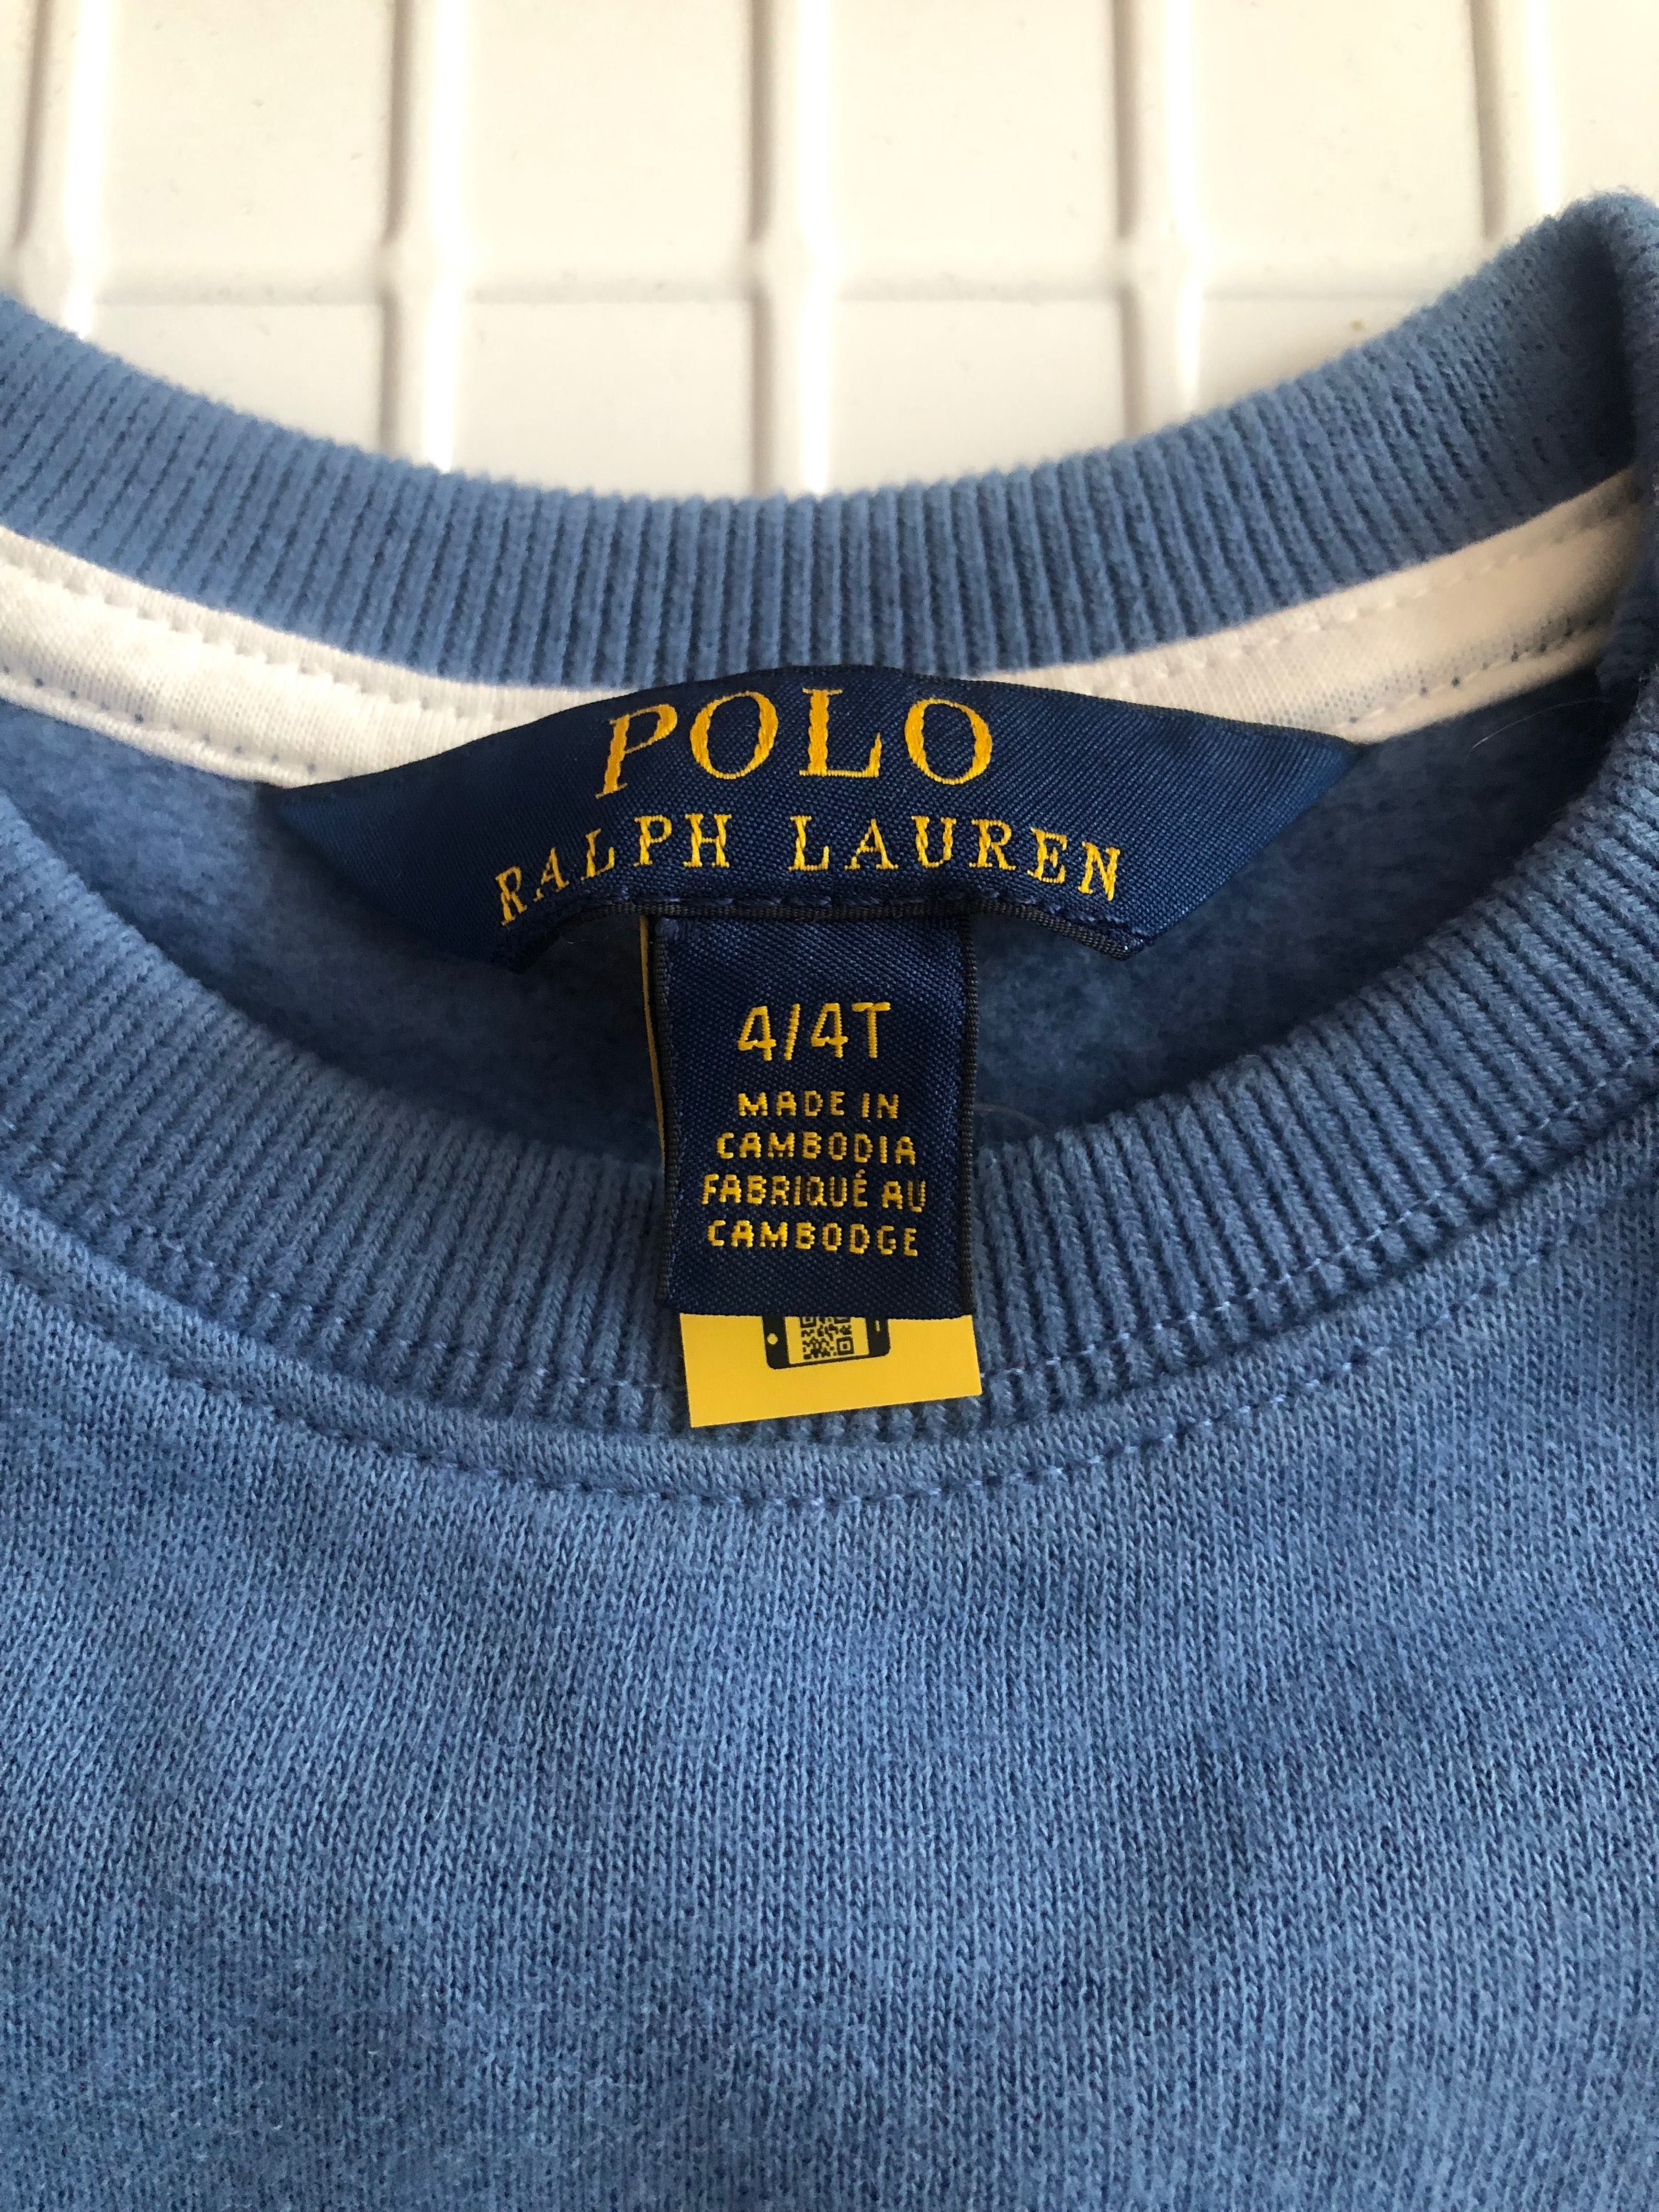 Нова с етикет, детска рокля Polo Ralph Lauren за 4 г. Оригинална.